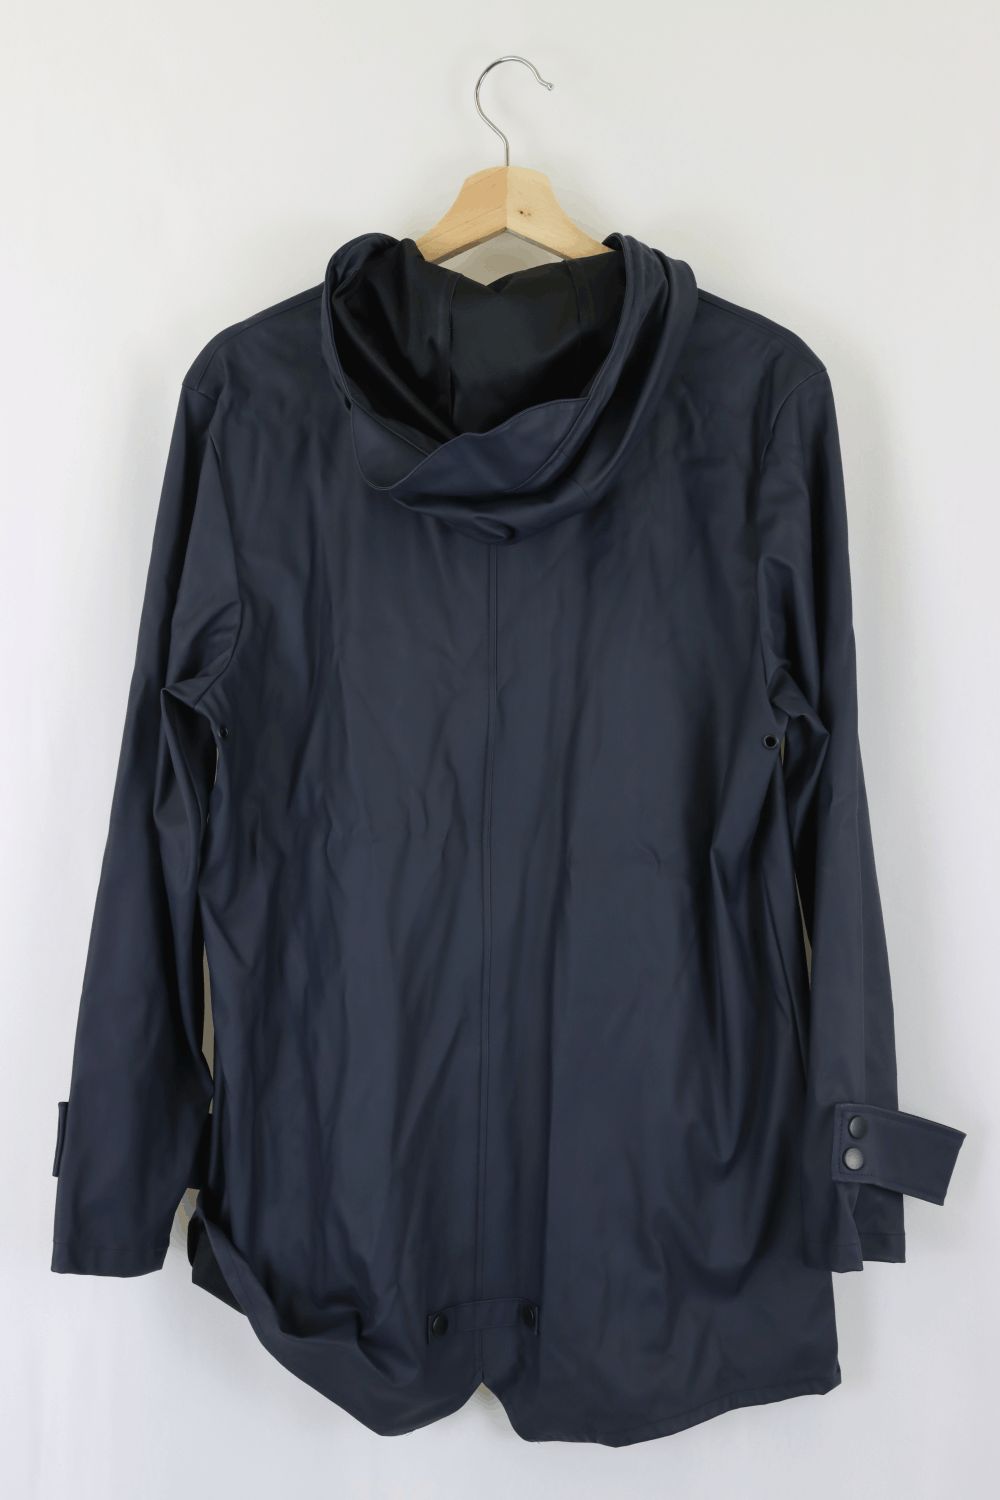 Zara Navy Rain Coat S